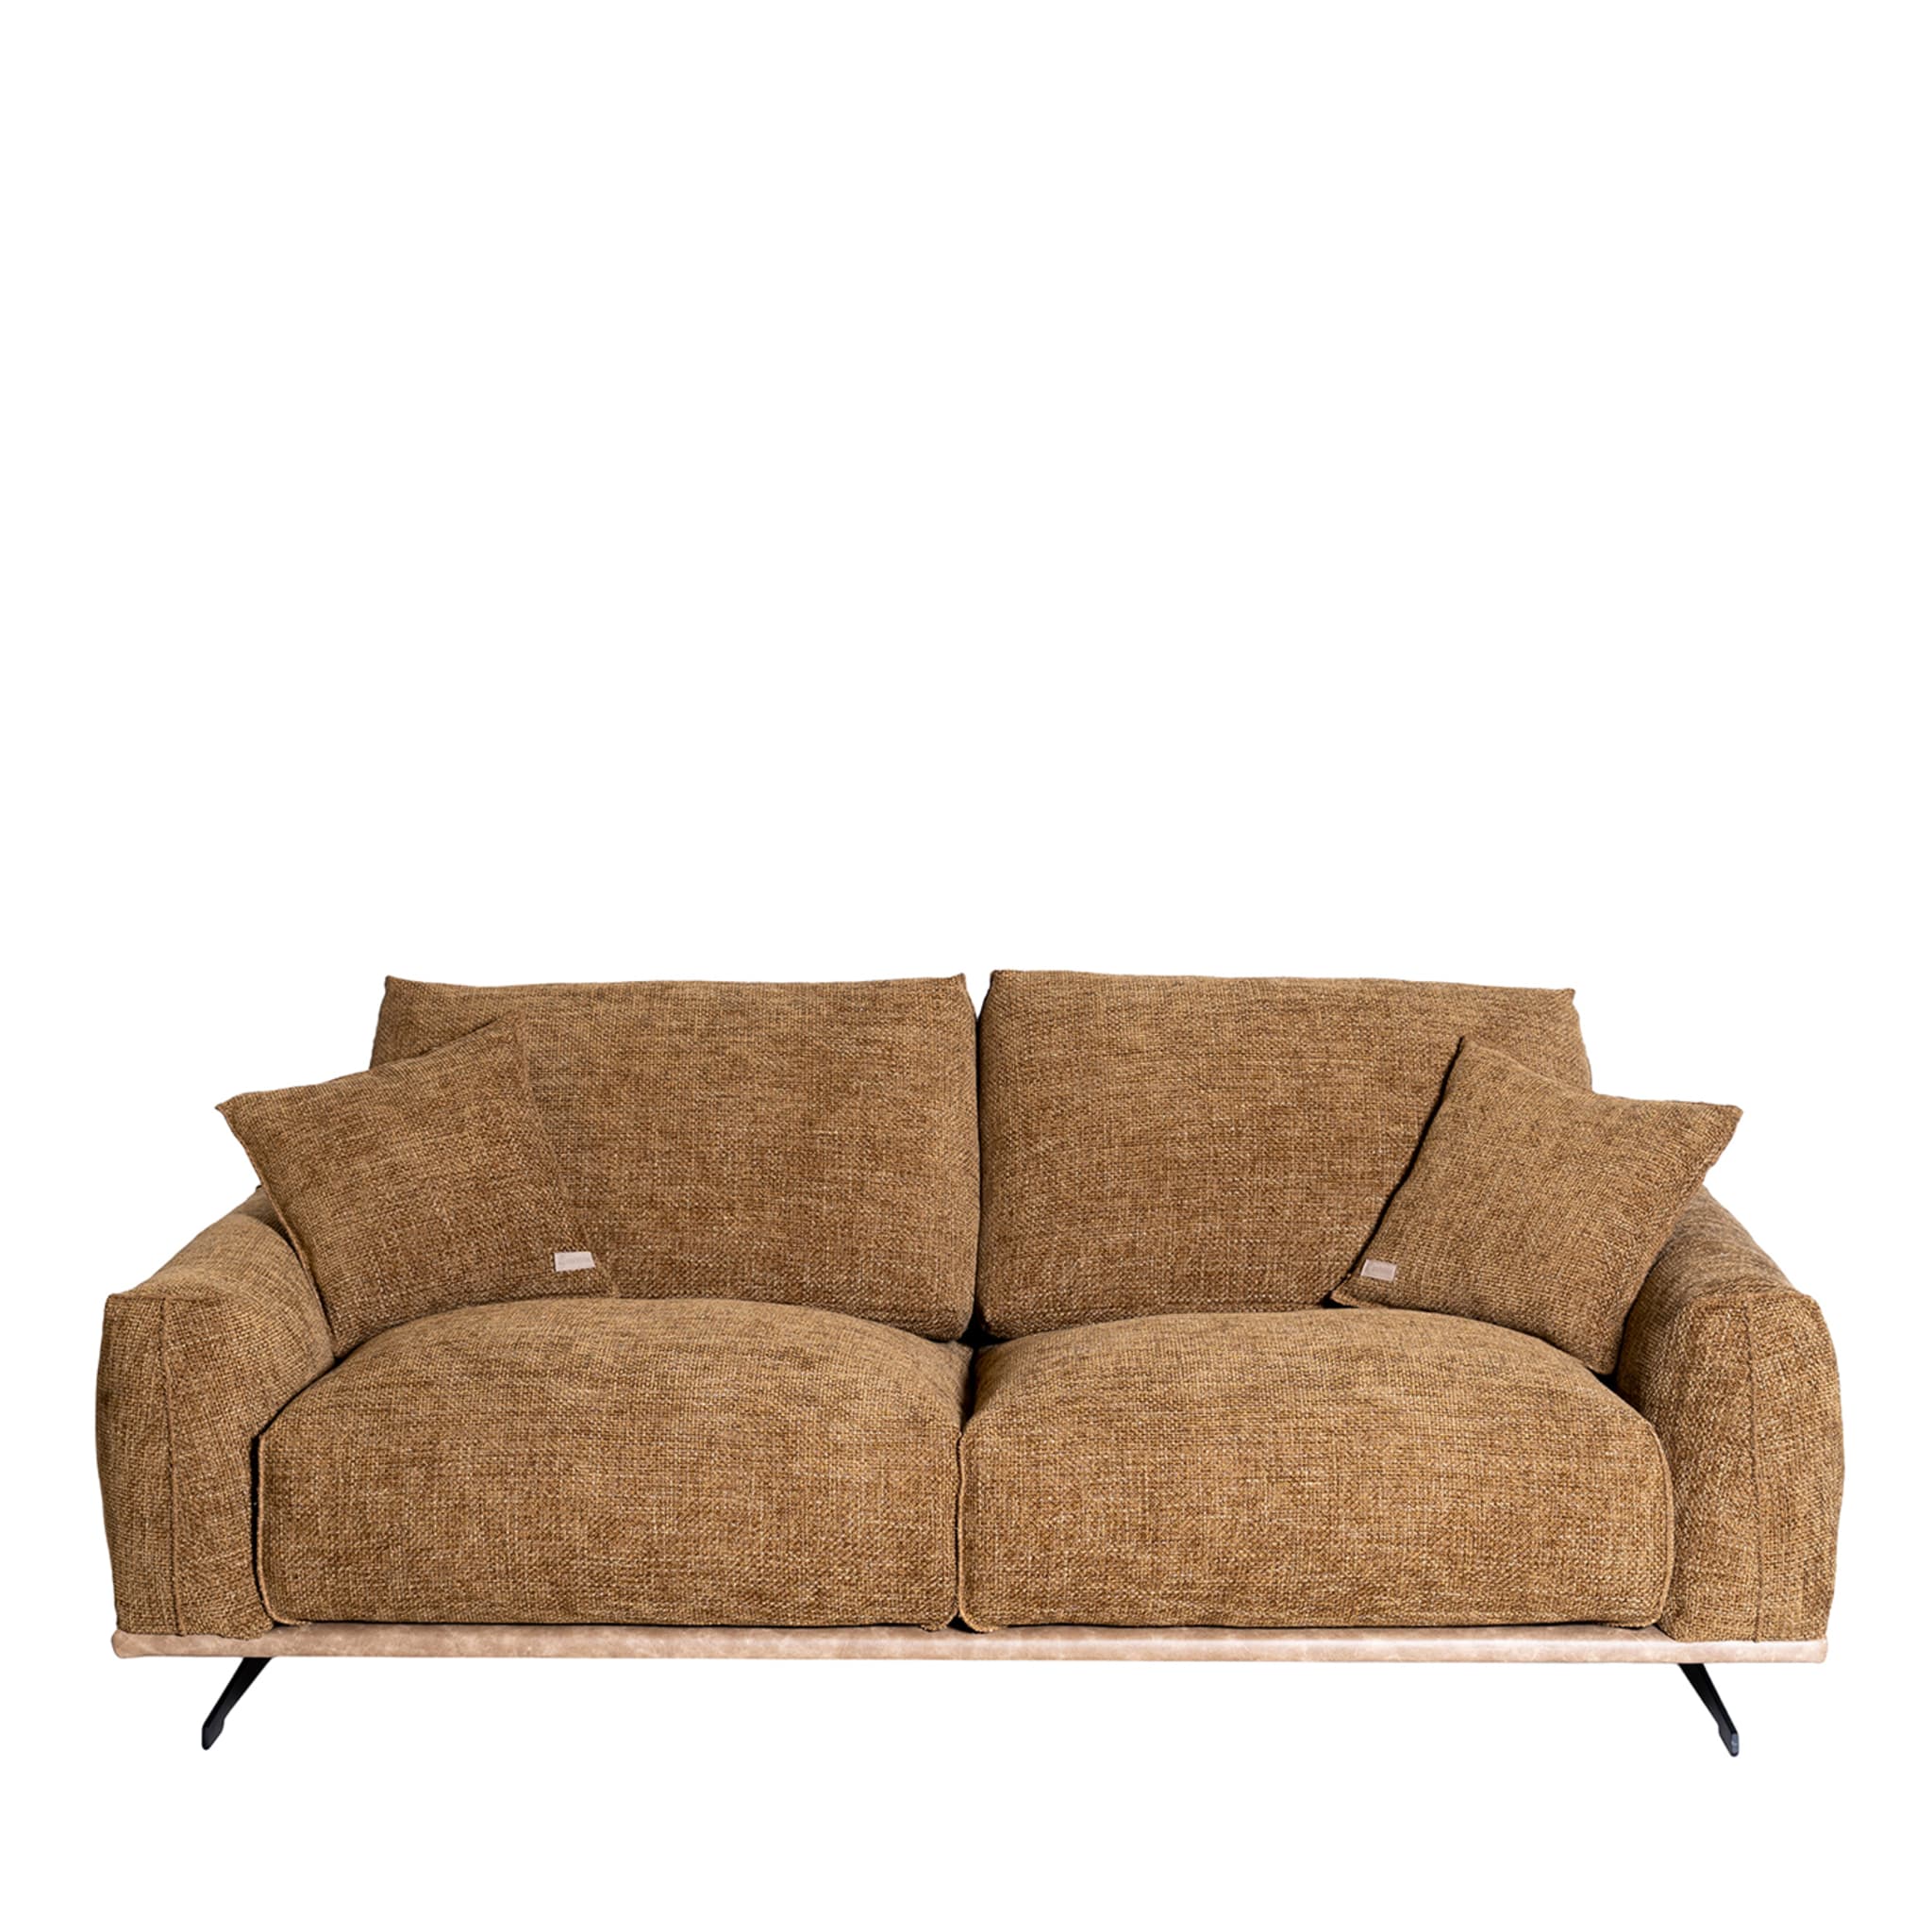 Boboli 2-Seater Sofa by Marco and Giulio Mantellassi - Main view